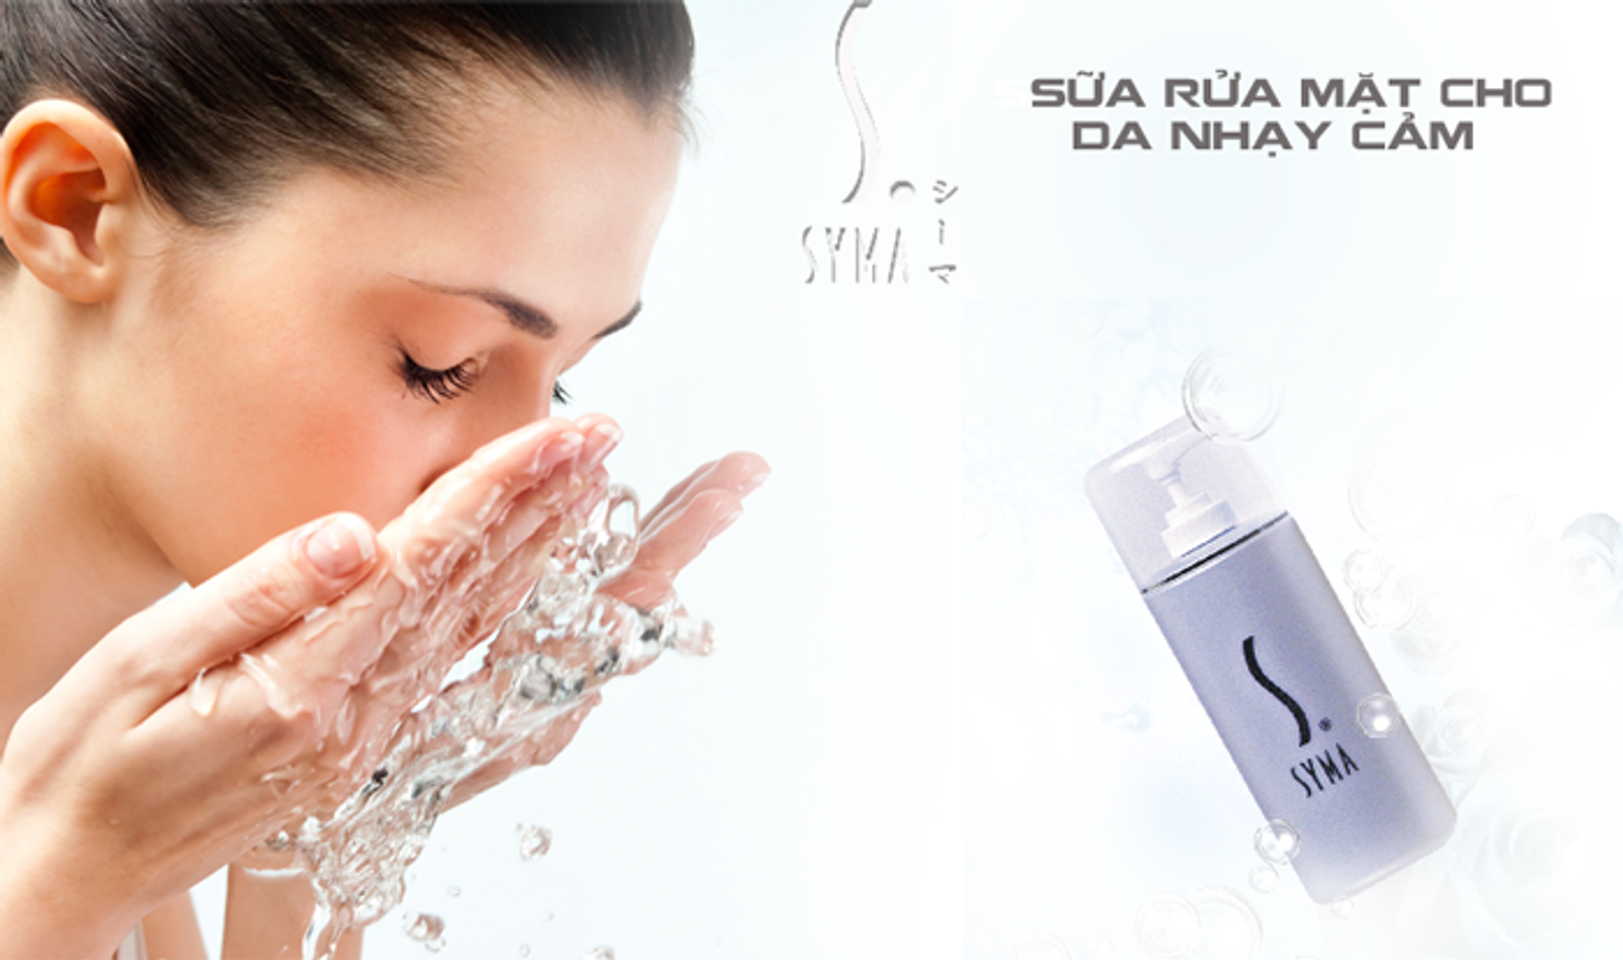 Sữa rửa mặt Syma giúp loại bỏ hoàn toàn lớp trang điểm và bụi bẩn bám trên da, làm dịu và duy trì độ ẩm tự nhiên của da